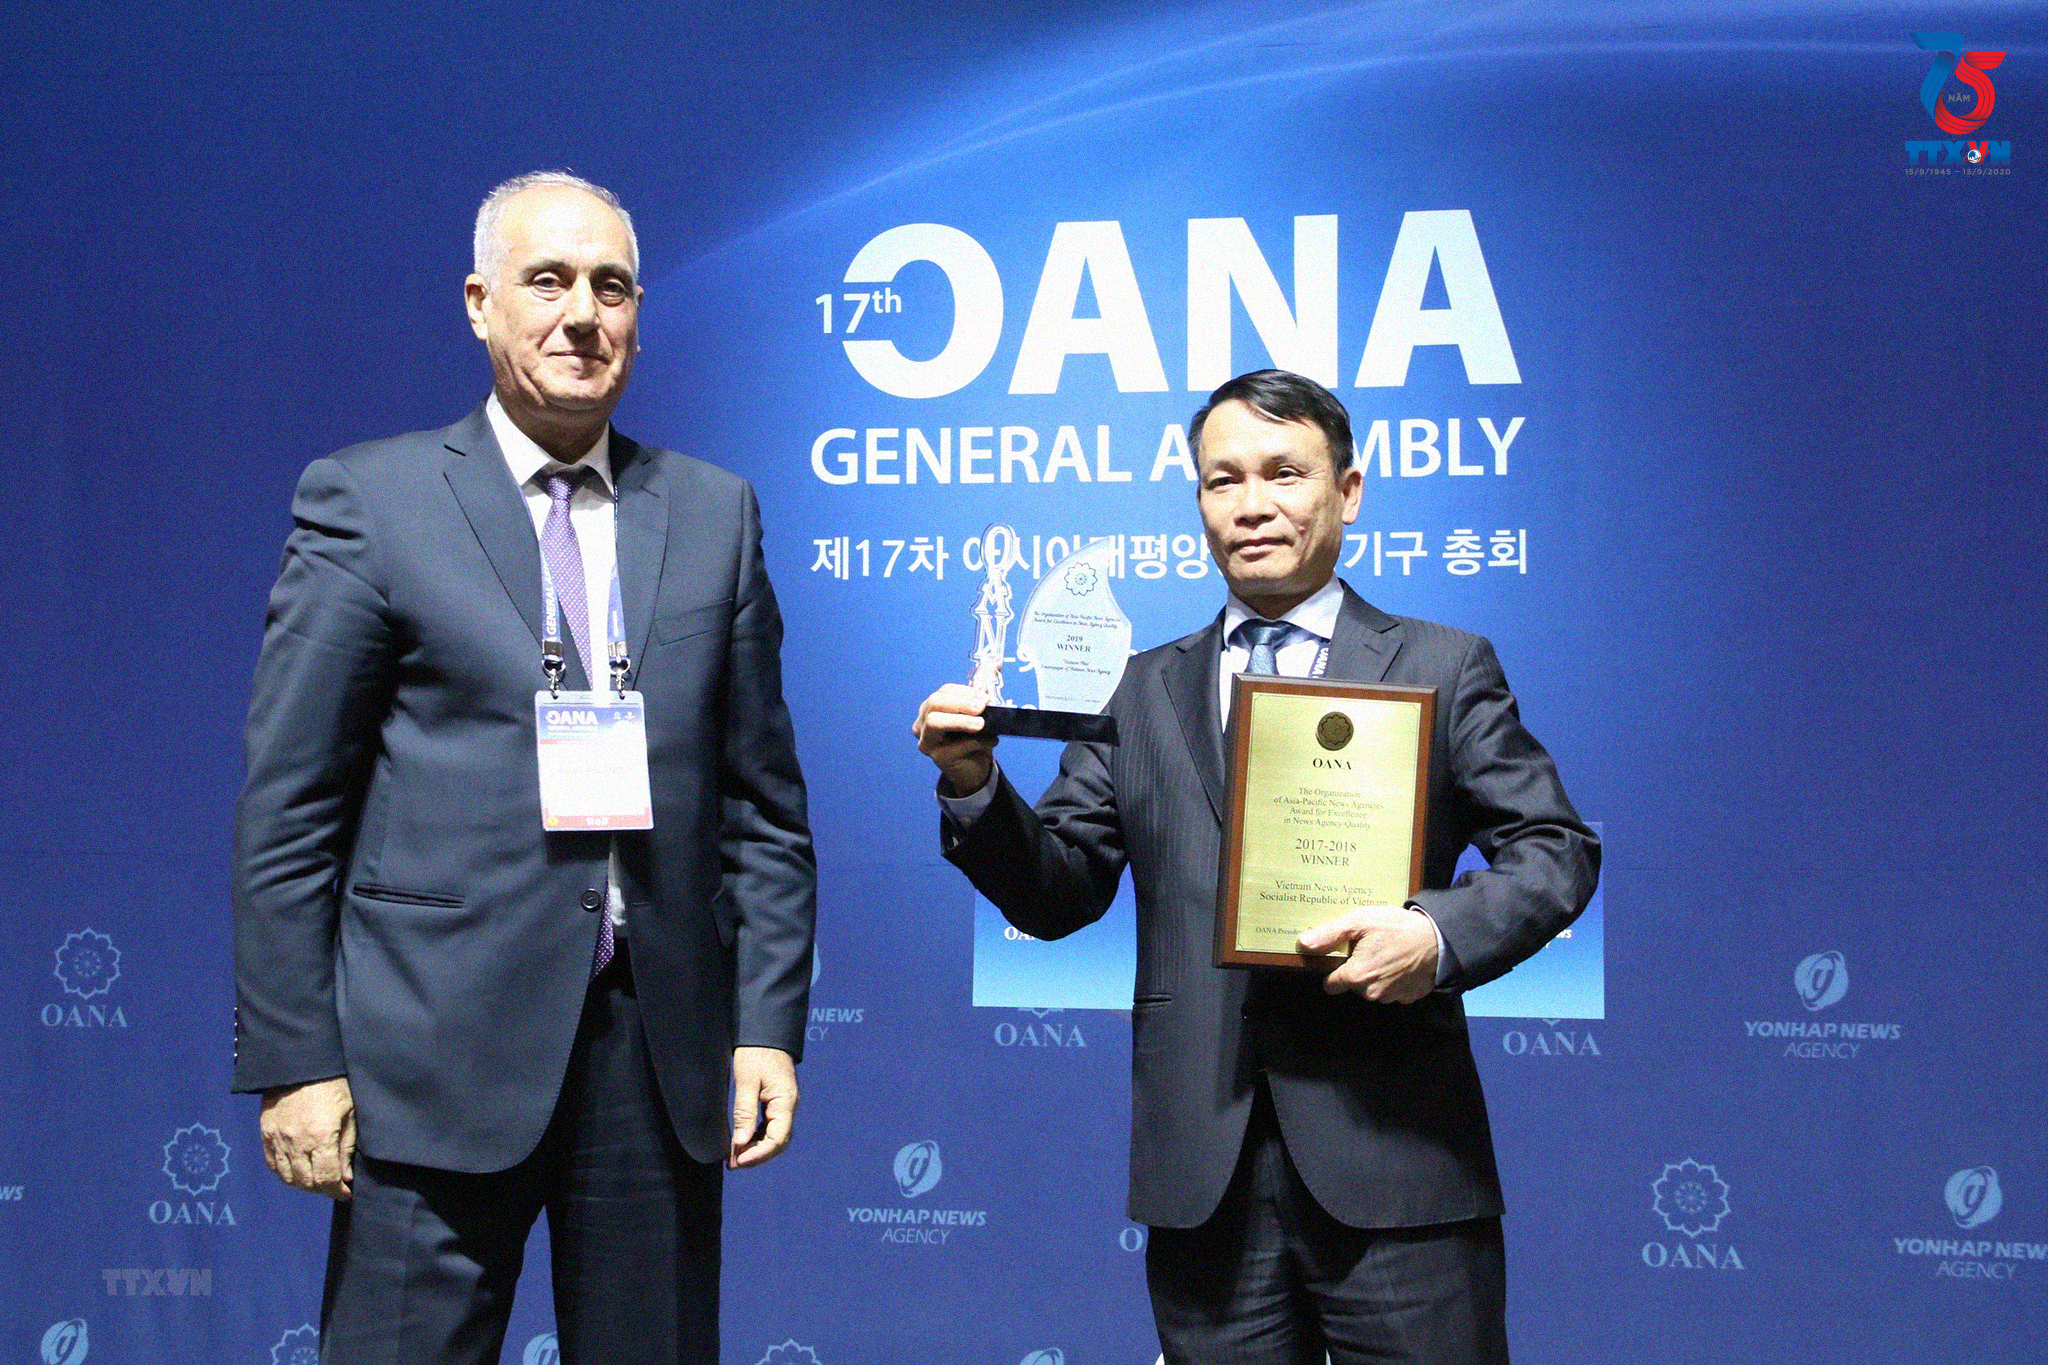 Sản phẩm Chatbot của Báo điện tử VietnamPlus (TTXVN) đoạt giải chất lượng thông tấn của OANA. Đây là giải thưởng được các hãng thông tấn thành viên Ban chấp hành OANA bình chọn tại Hội nghị Ban Chấp hành OANA lần thứ 44, diễn ra tại Hà Nội (Việt Nam) từ ngày 18-20/4/2019. Trong ảnh: Thay mặt TTXVN, Tổng Giám đốc Nguyễn Đức Lợi nhận Giải thưởng xuất sắc chất lượng thông tấn của OANA do Chủ tịch OANA nhiệm kỳ 2016-2019 Aslan Aslanov trao tặng. (Ảnh: Mạnh Hùng/TTXVN)